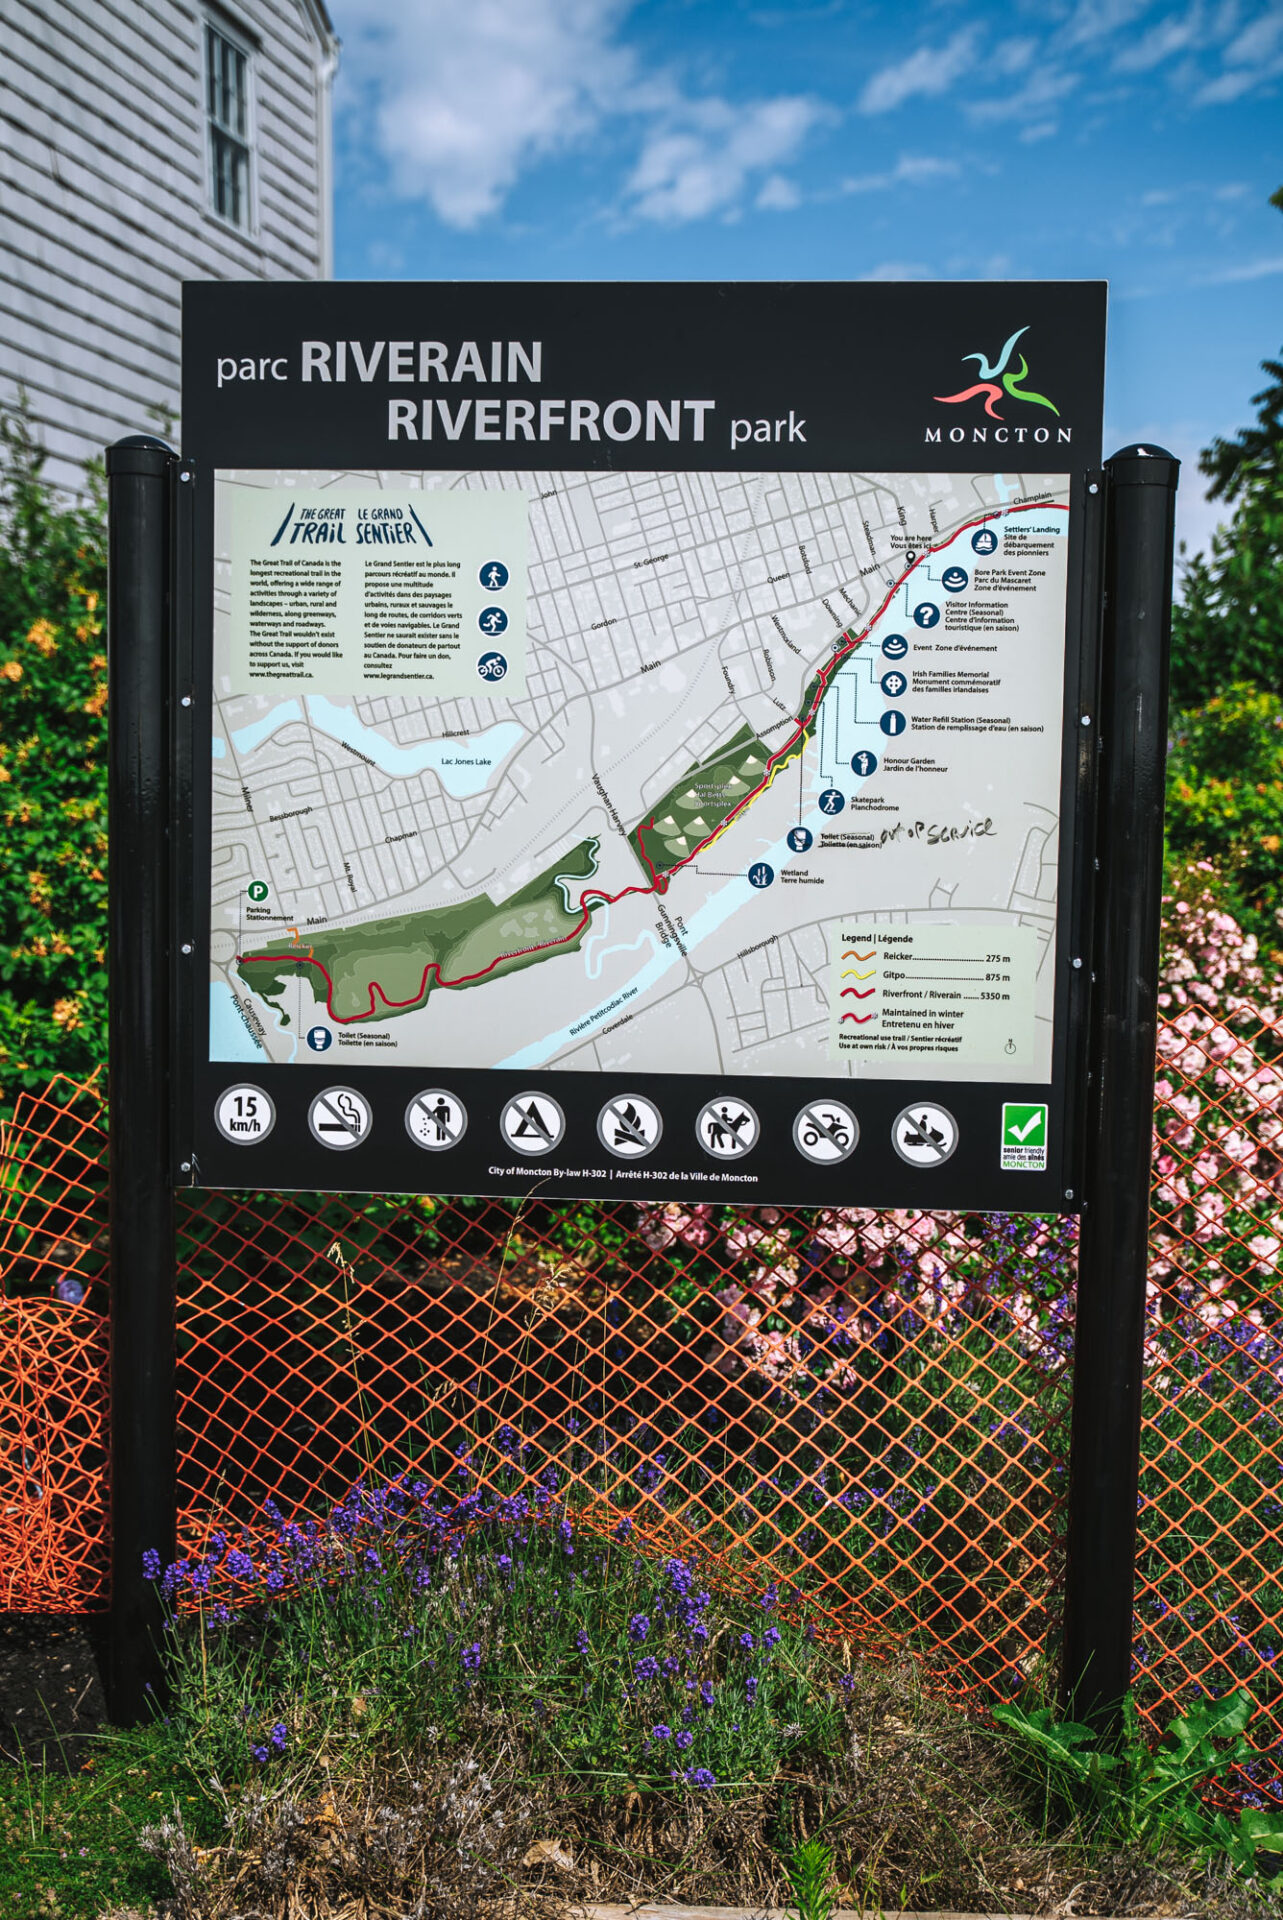 Riverfront Park, Moncton